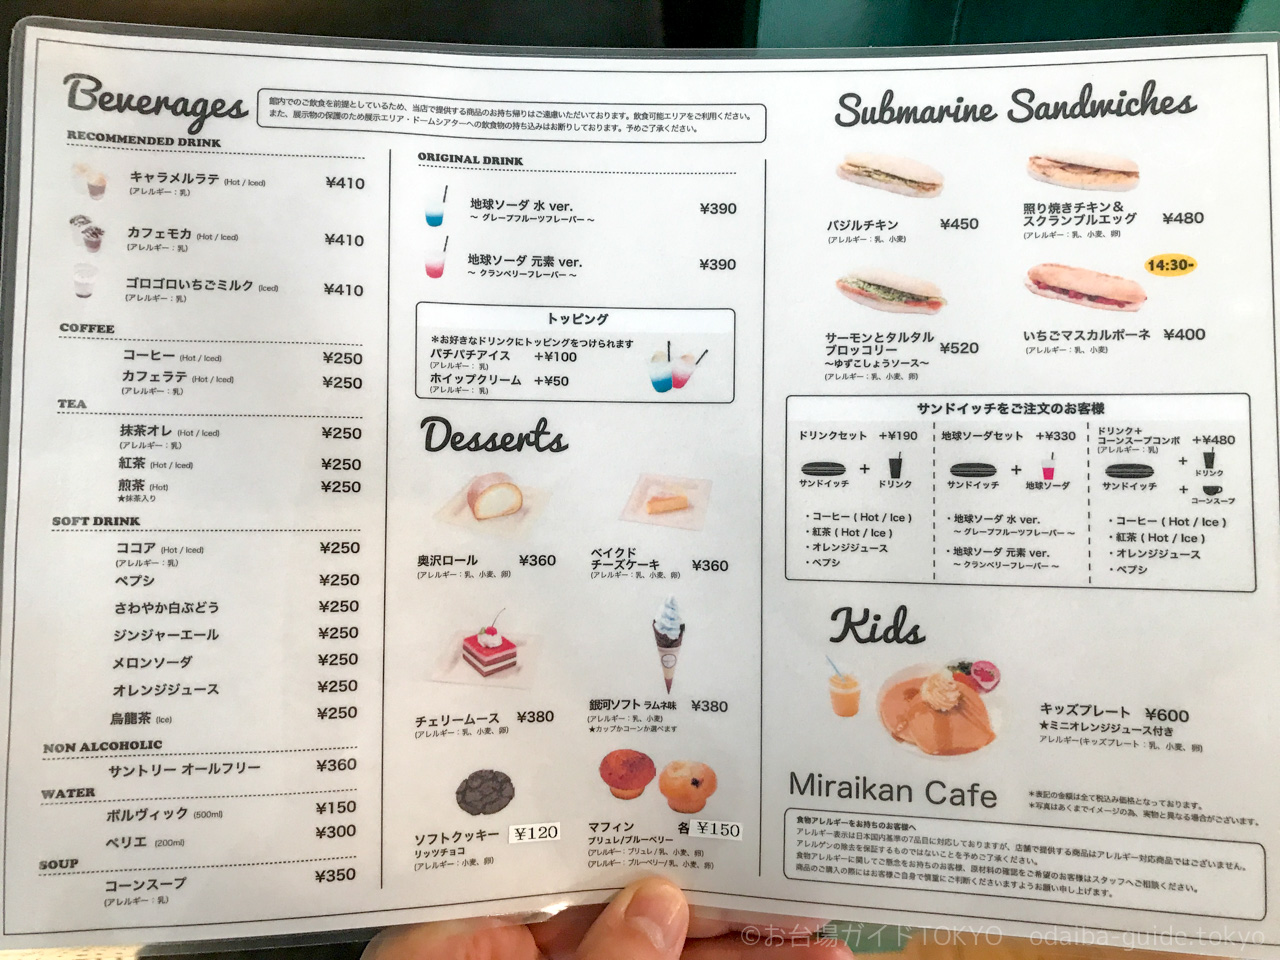 日本科学未来館のカフェ Miraikan Cafe がリニューアルへ 7 4 お台場ガイドtokyo